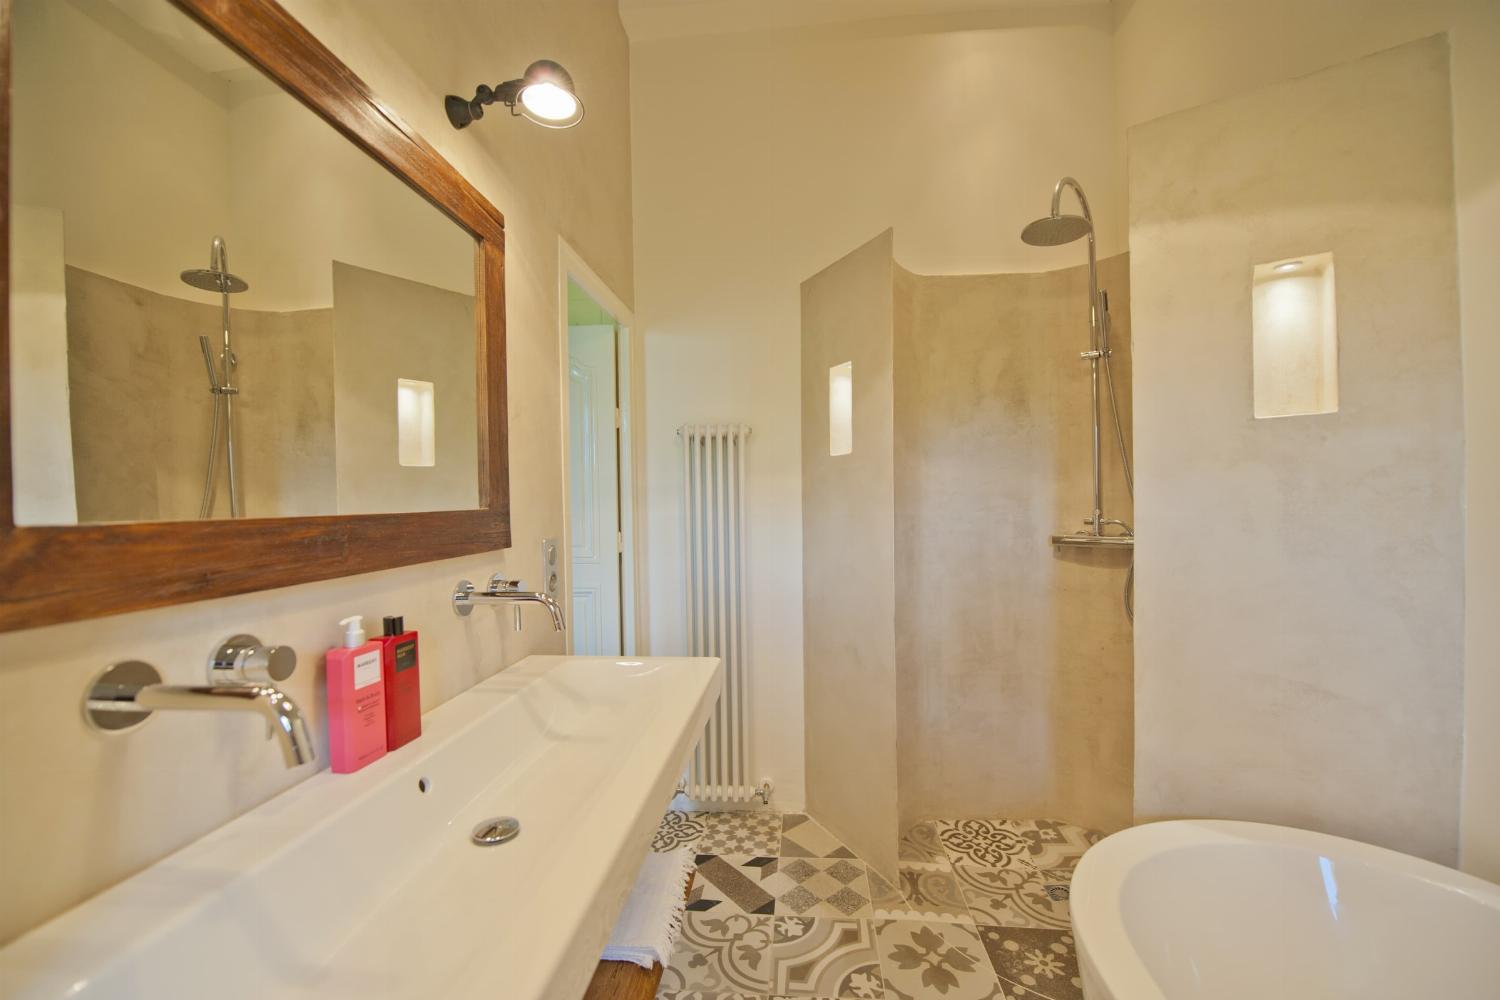 Salle de bain | Location de vacances dans le Lot-et-Garonne